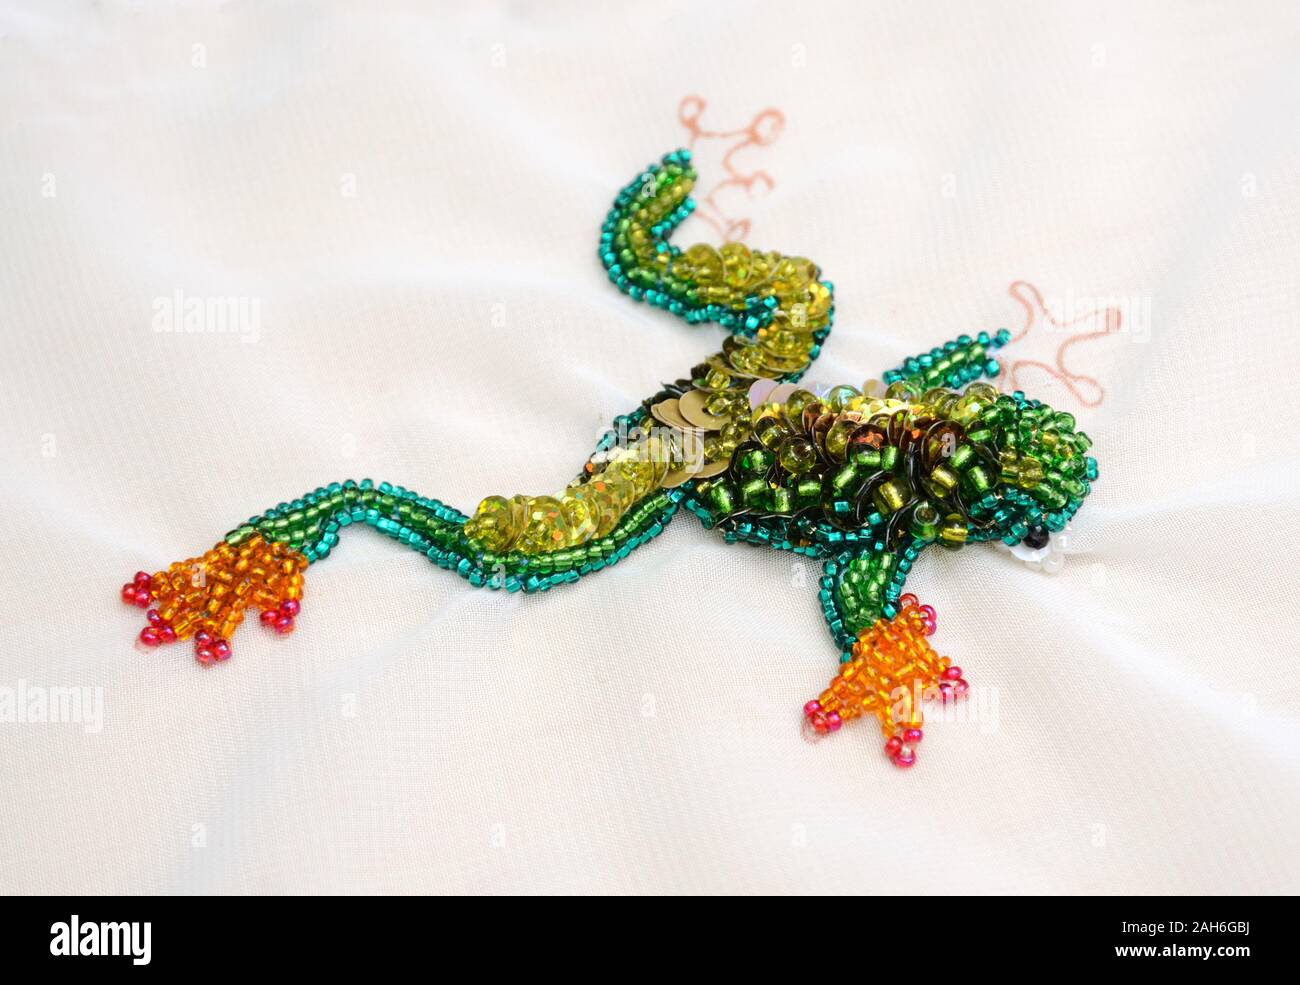 Frosch bestickt mit Perlen und Pailletten auf dem weißen Tuch  Stockfotografie - Alamy